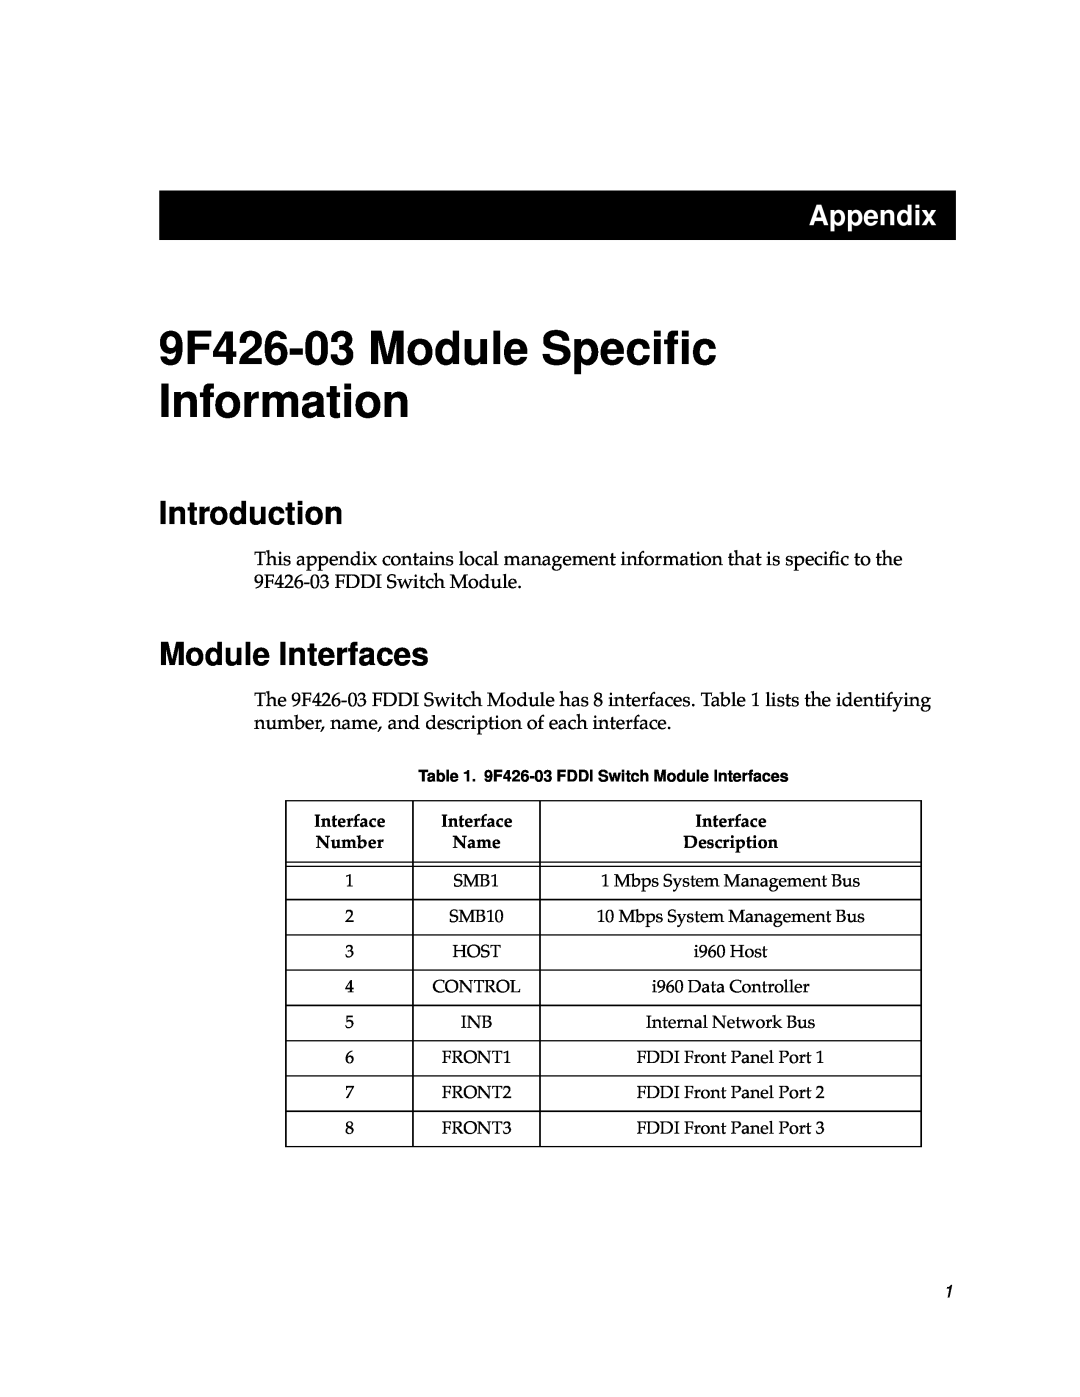 Cabletron Systems appendix Introduction, Module Interfaces, 9F426-03 Module Speciﬁc Information, Appendix 